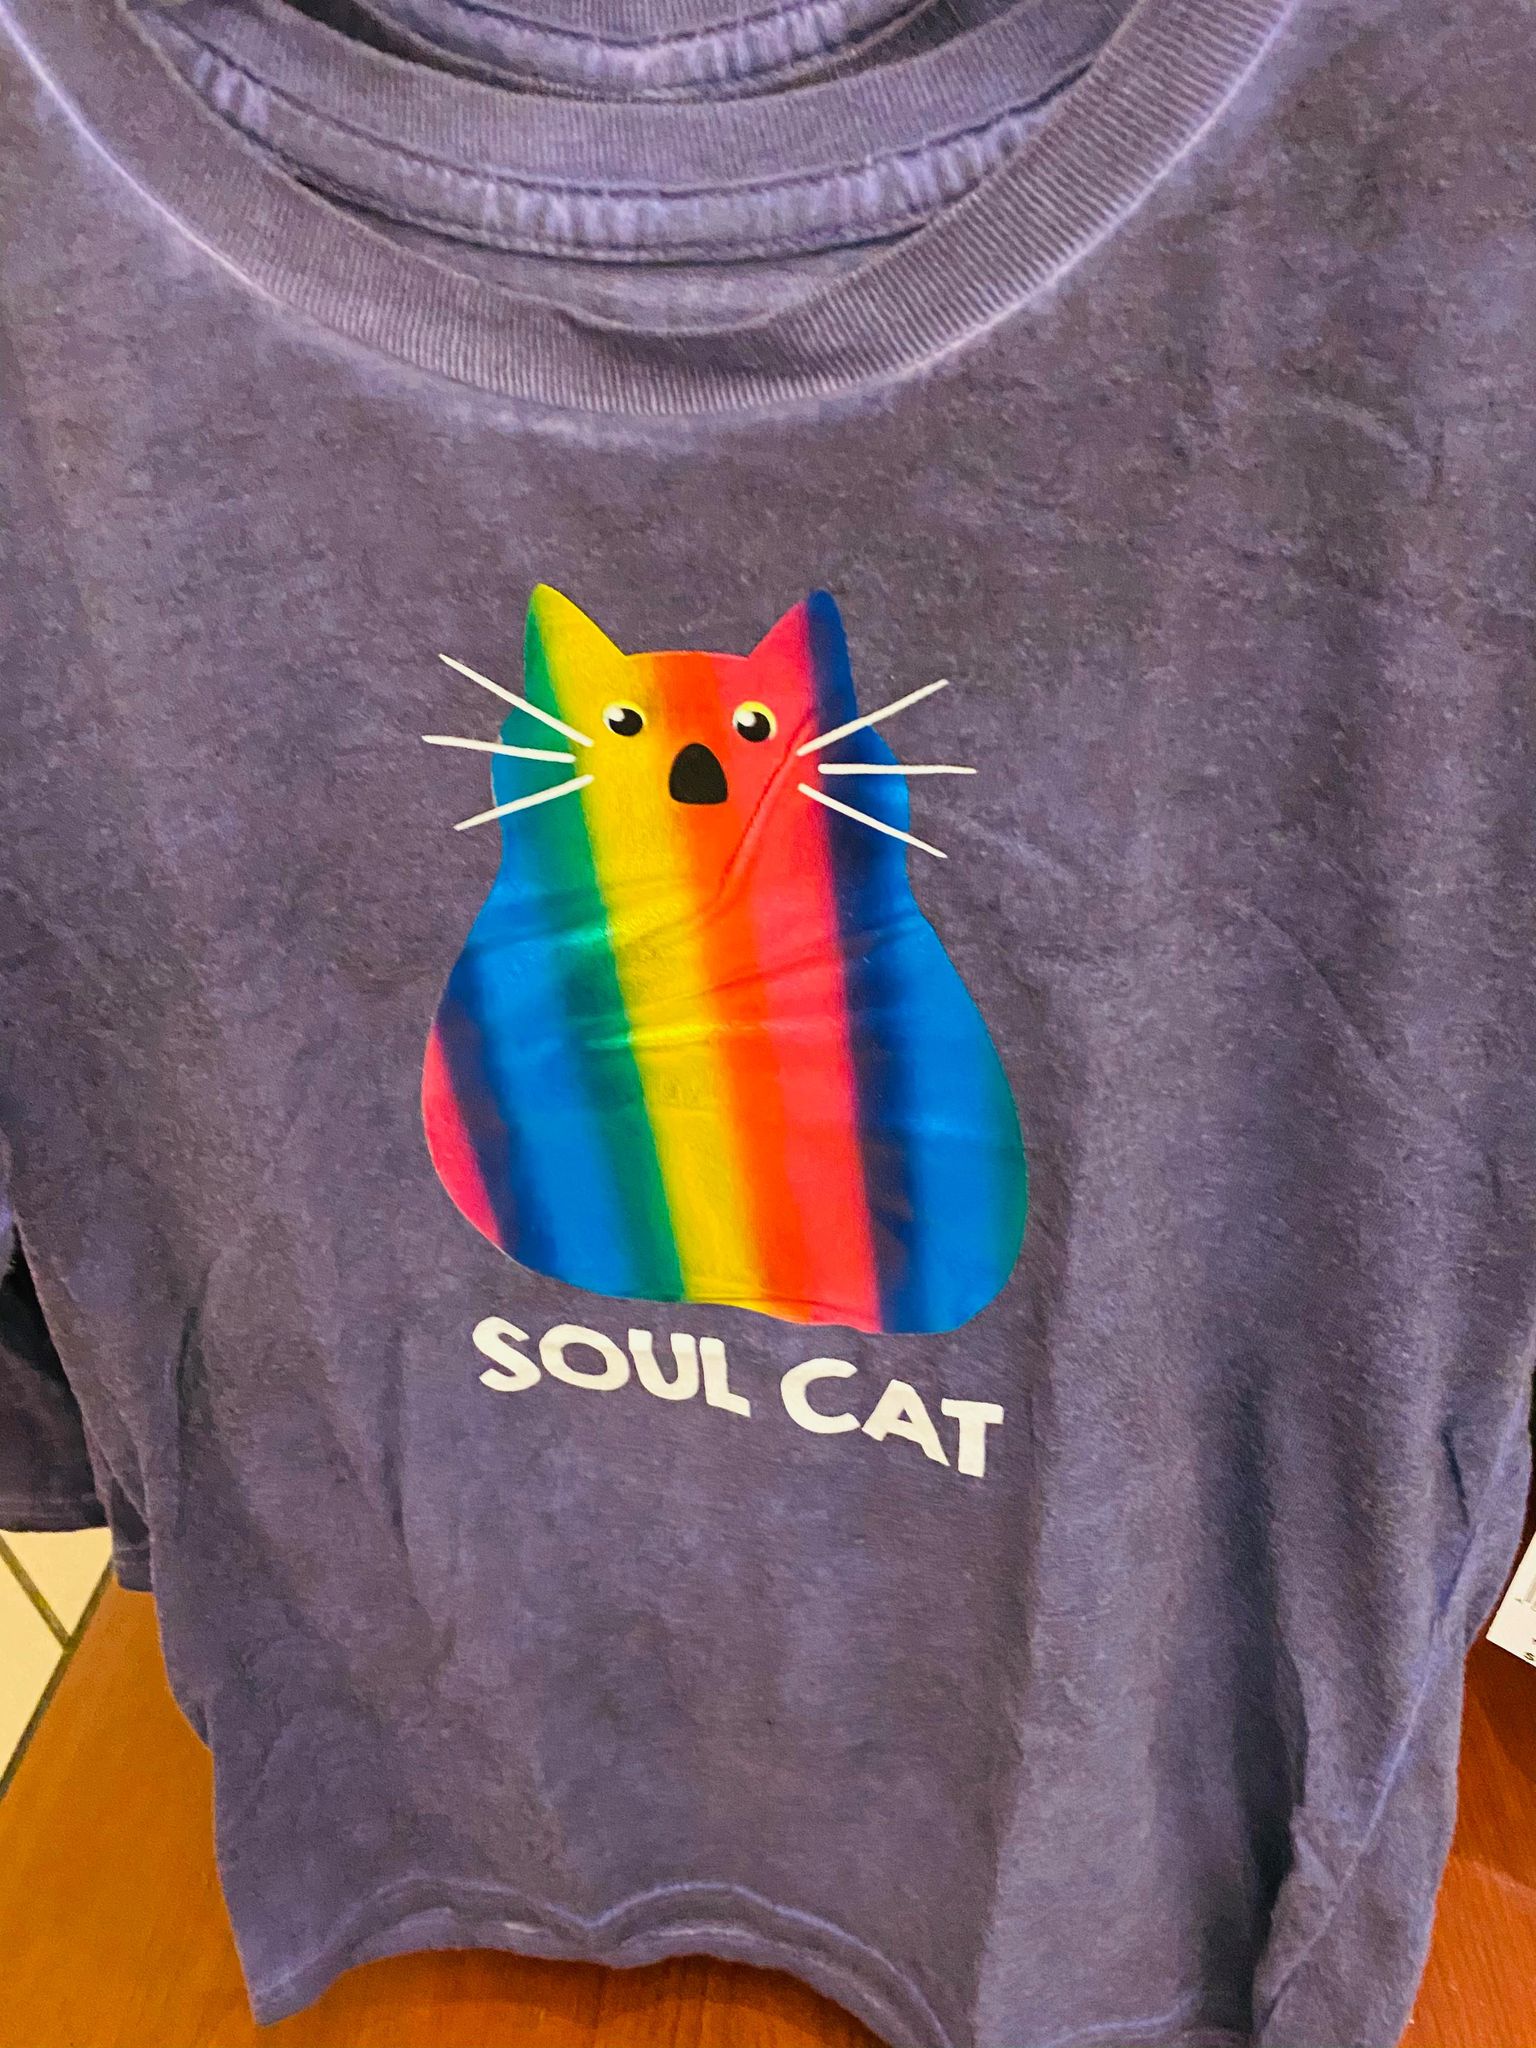 soul cat shirt